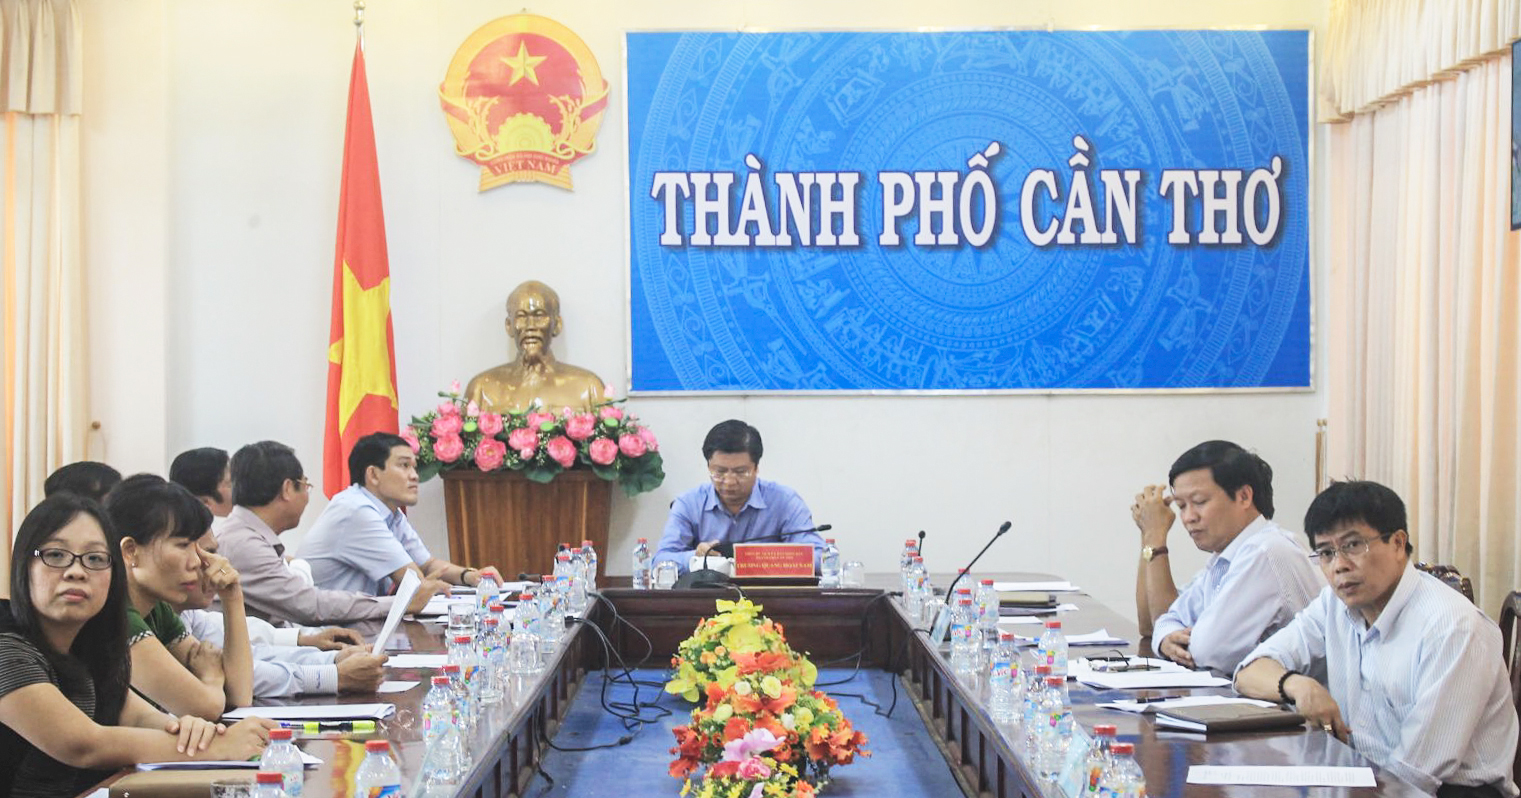 Phó chủ tịch UBND TP Cần Thơ Trương Quang Hoài Nam cùng các đại biểu tham dự hội nghị tại điểm cầu trực tuyến TP Cần Thơ.